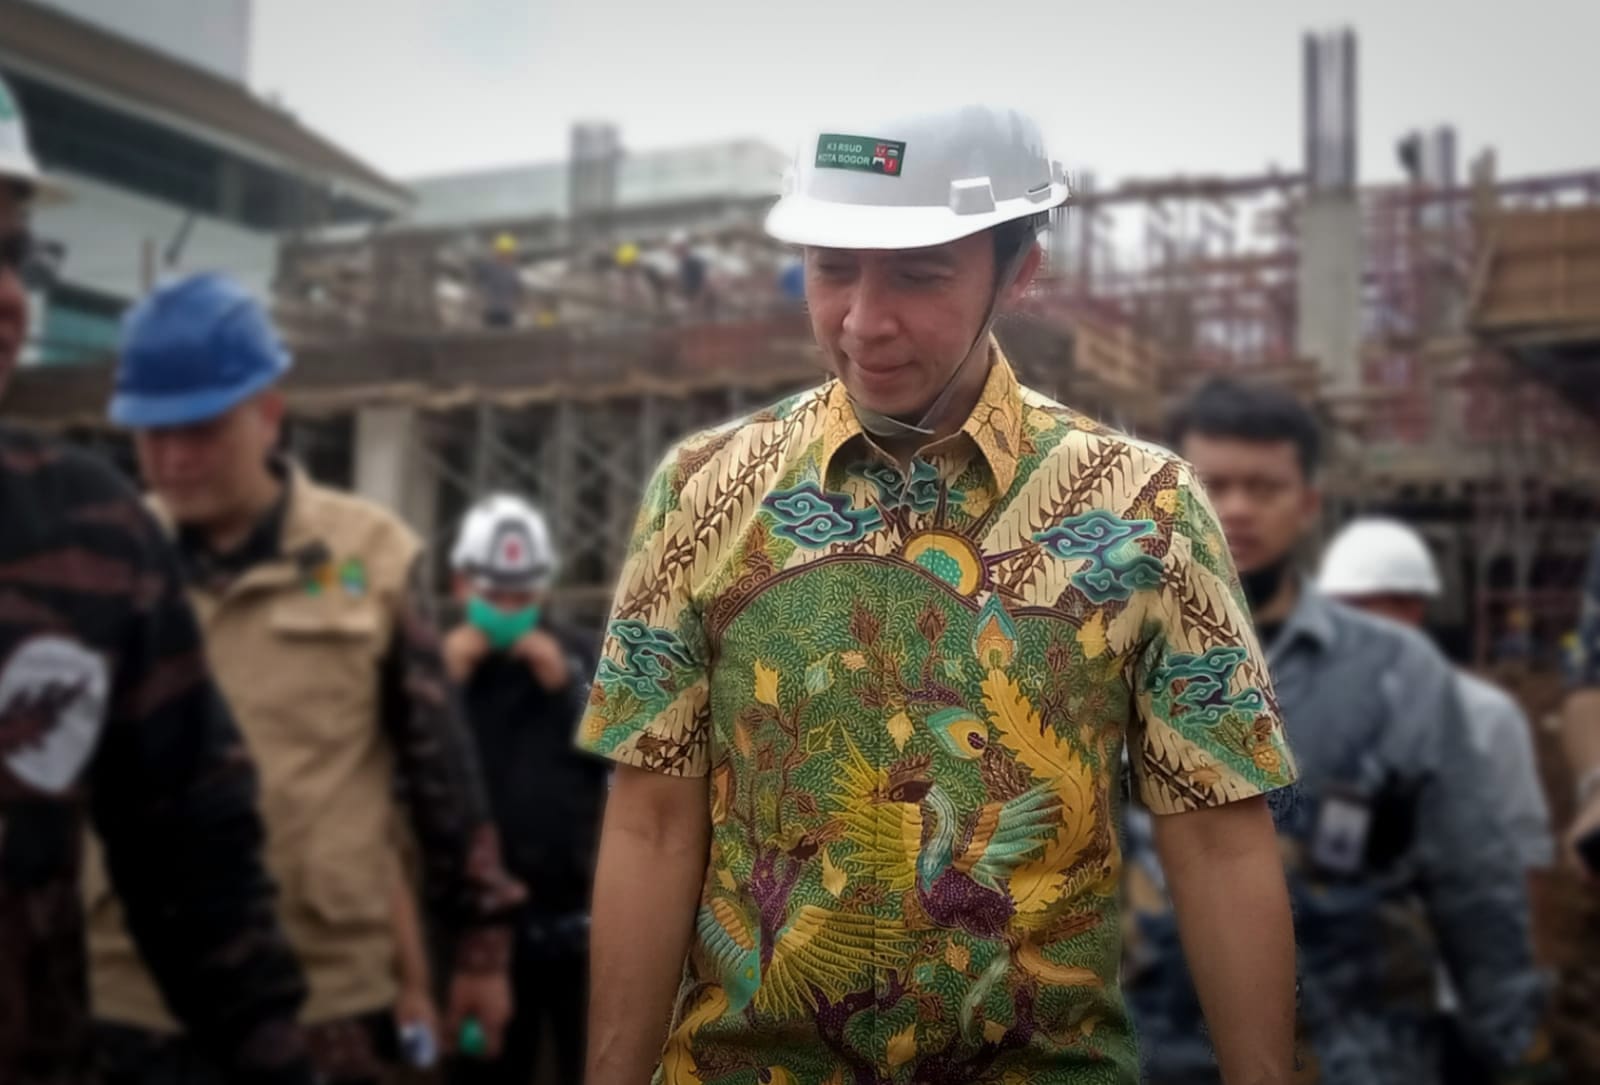 Sidak Pembangunan RSUD Kota Bogor, Dedie: Deviasi Positif 0,2 Persen